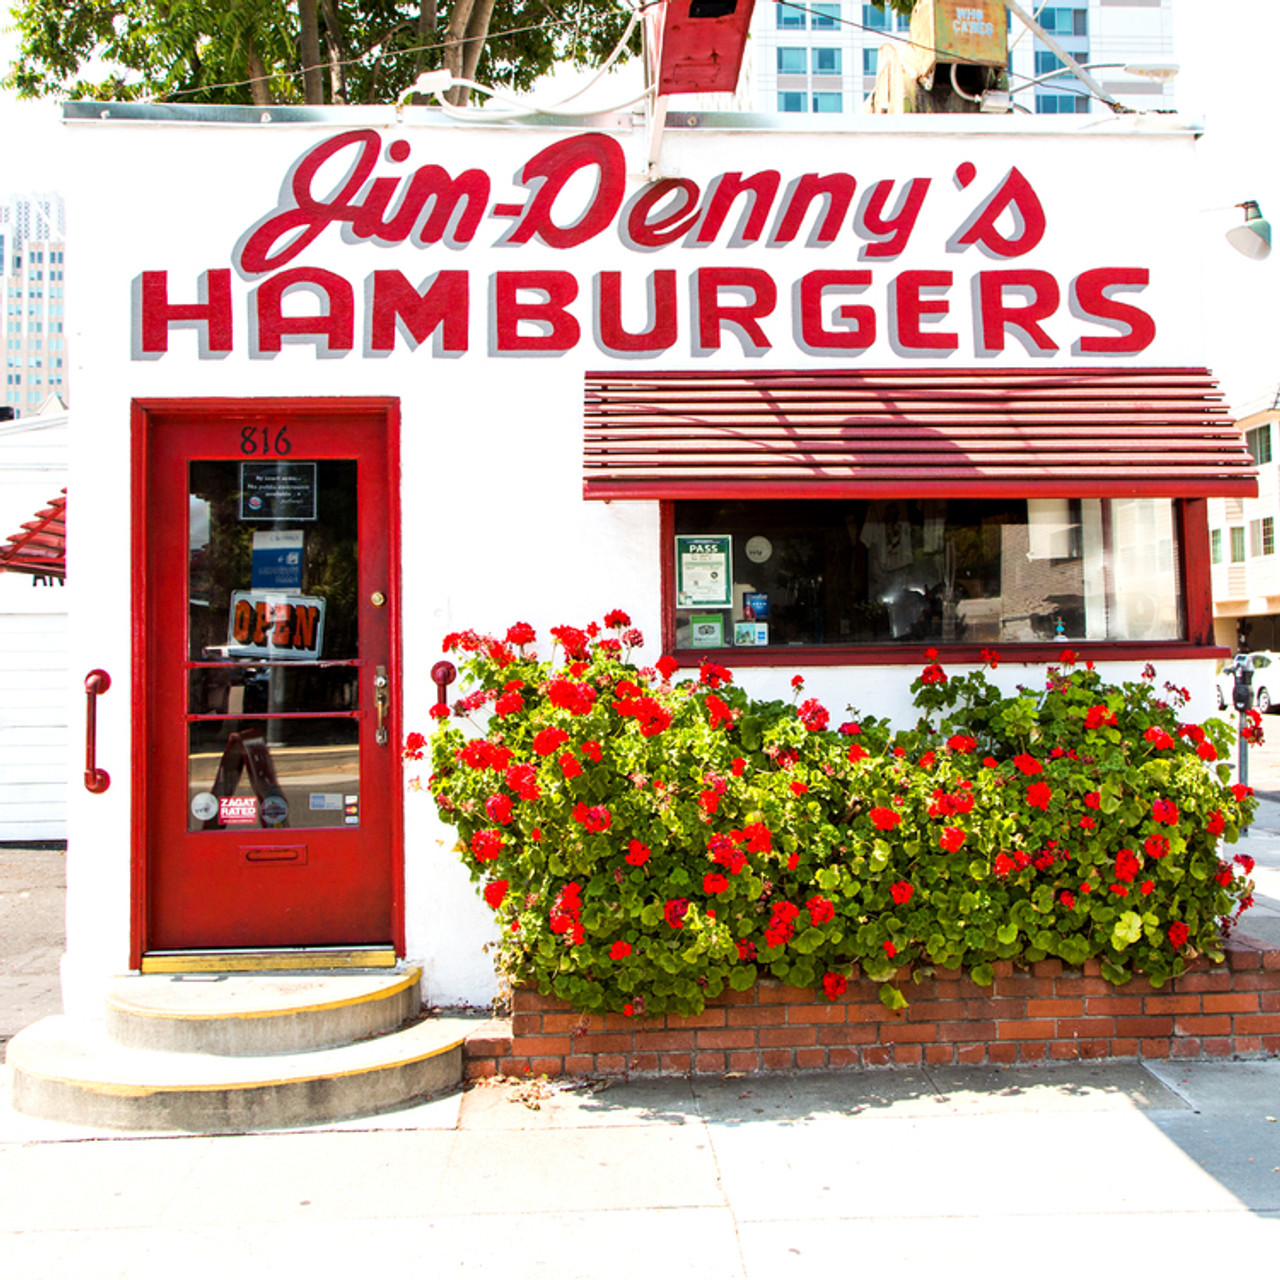 Jim-Denny's